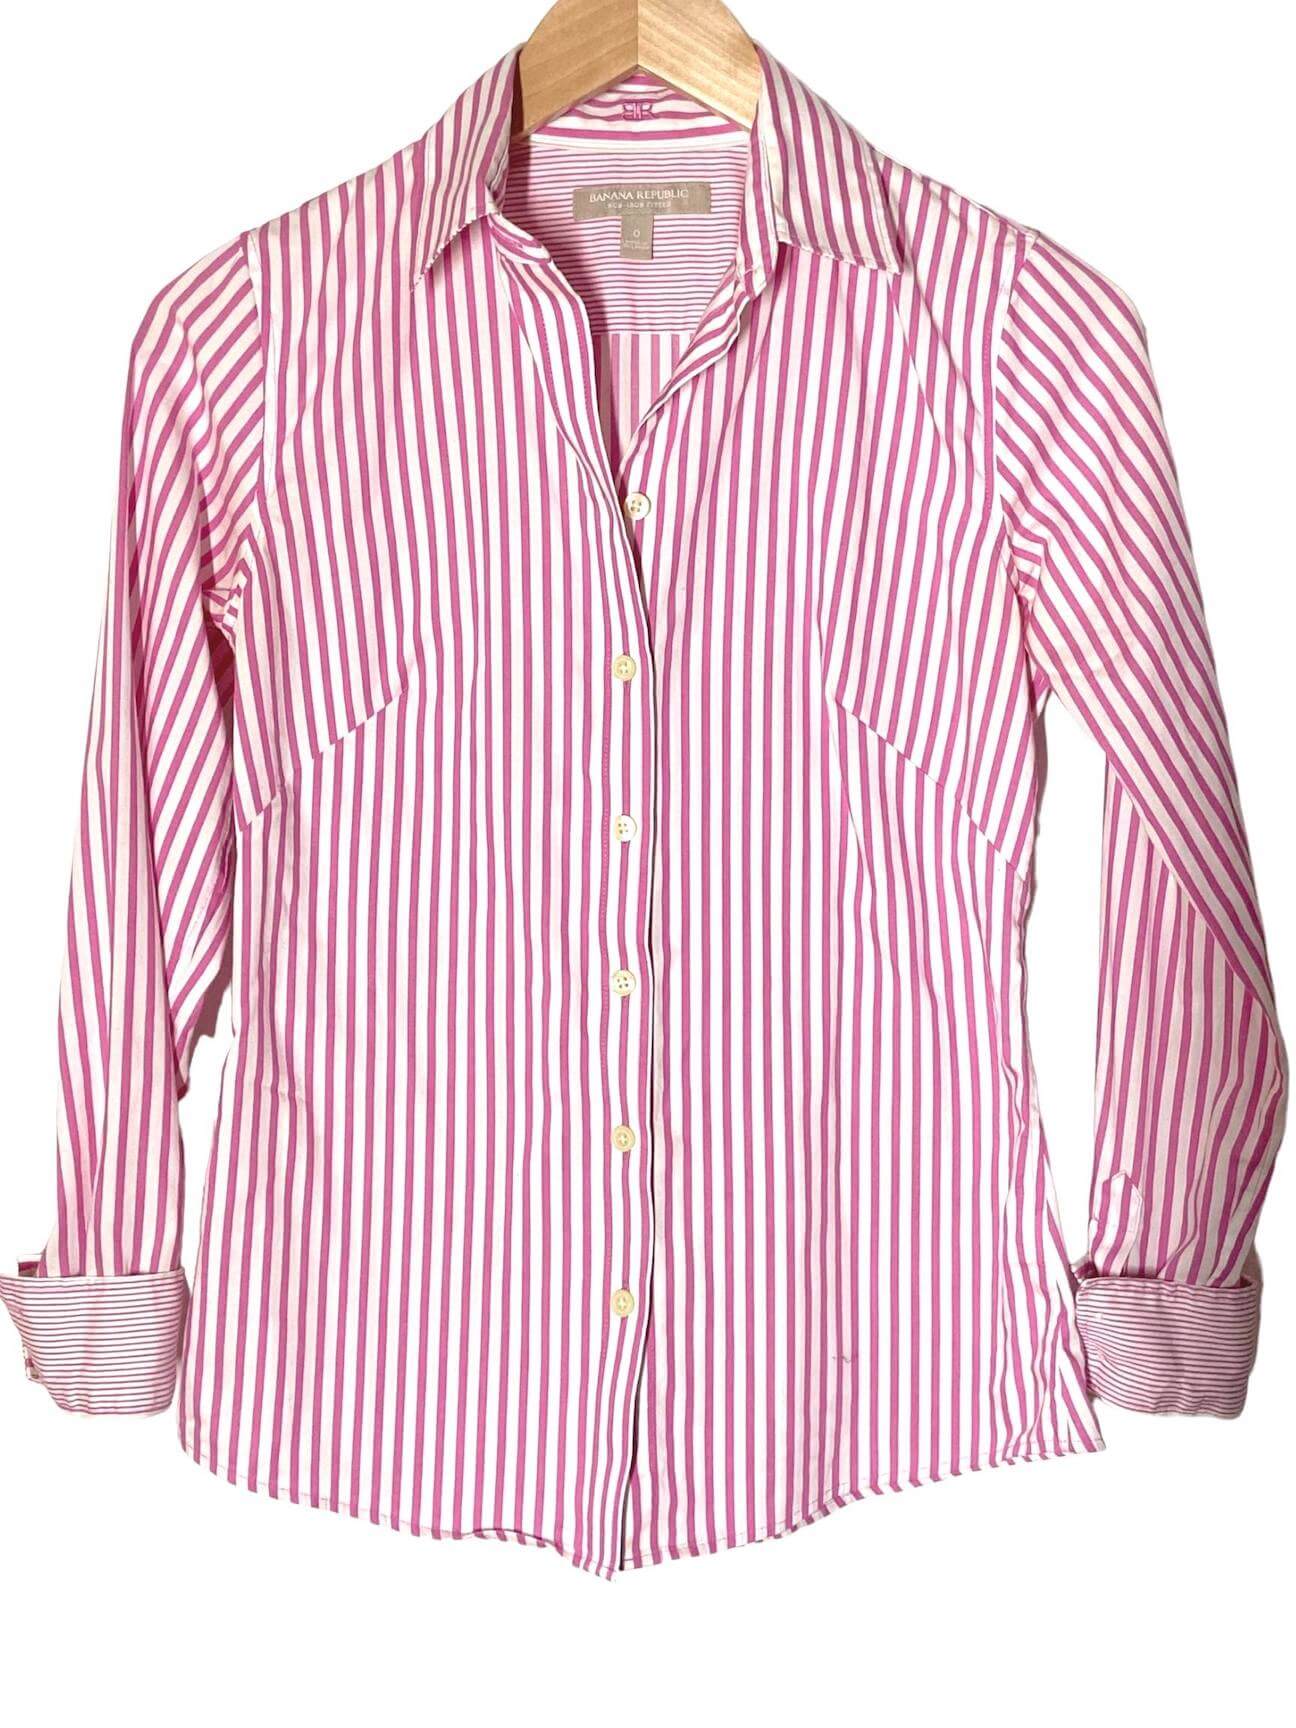 Light Summer BANANA REPUBLIC pink candy stripe button-down shirt